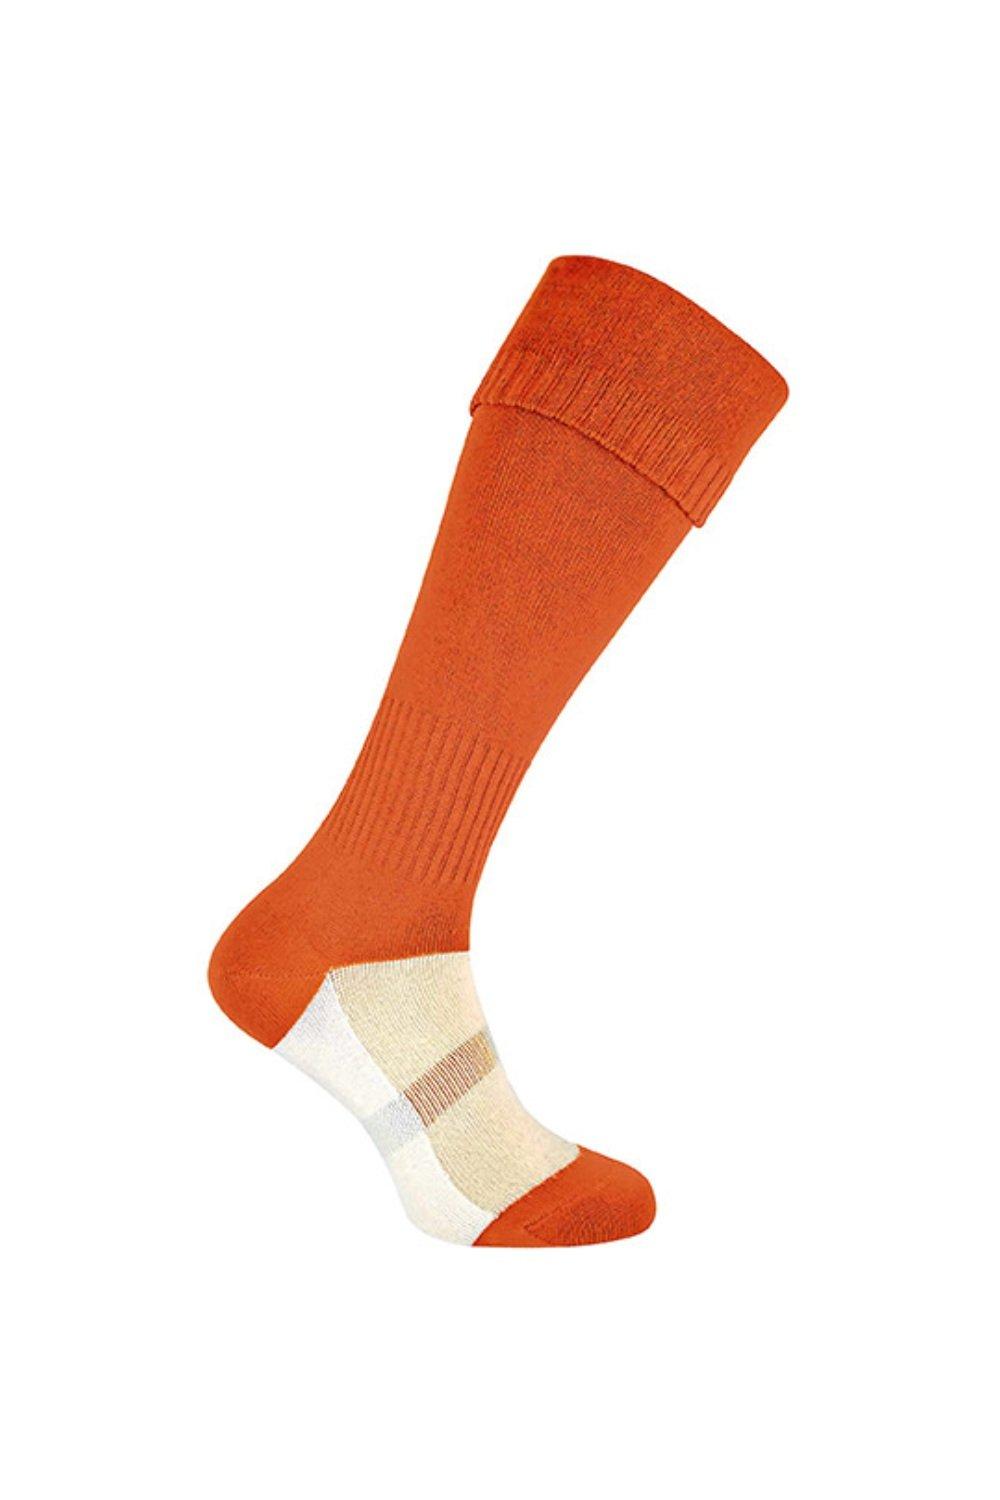 Спортивные носки до колена для футбола/хоккея/регби ROLY, оранжевый